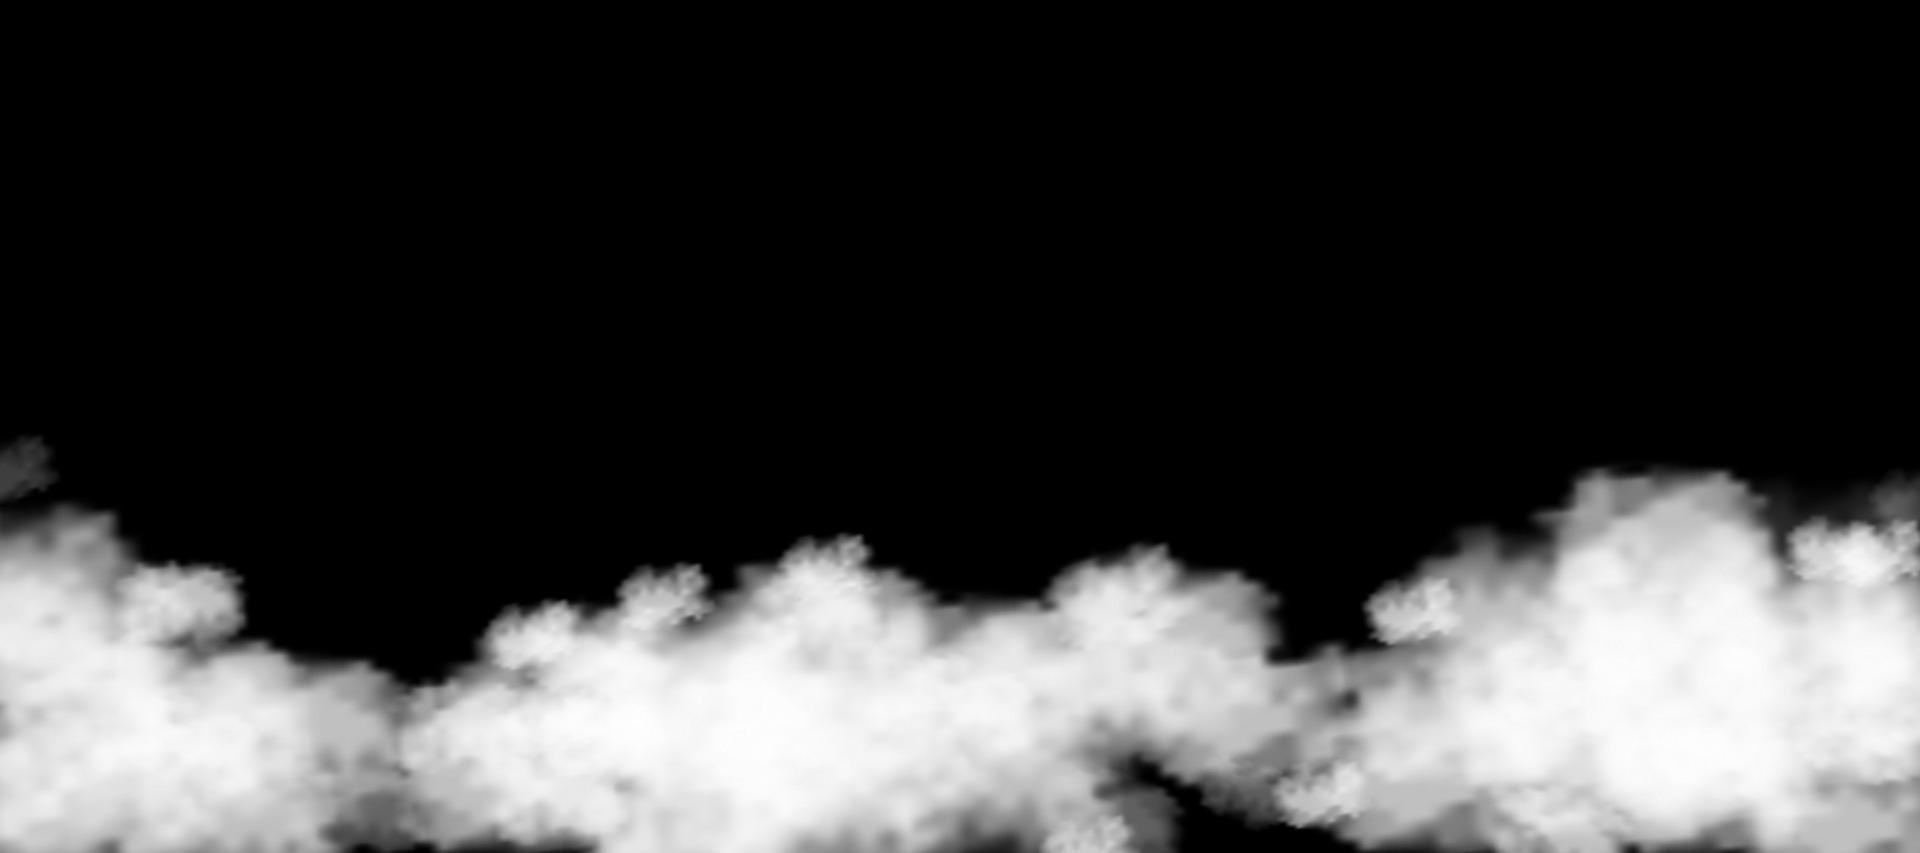 cielo de nubes blancas esponjosas aislado en fondo negro para decoración de plantilla de fondo o cubierta de banner web, elementos de ilustración vectorial de nubes naturales suaves de humo o tormenta de truenos vector